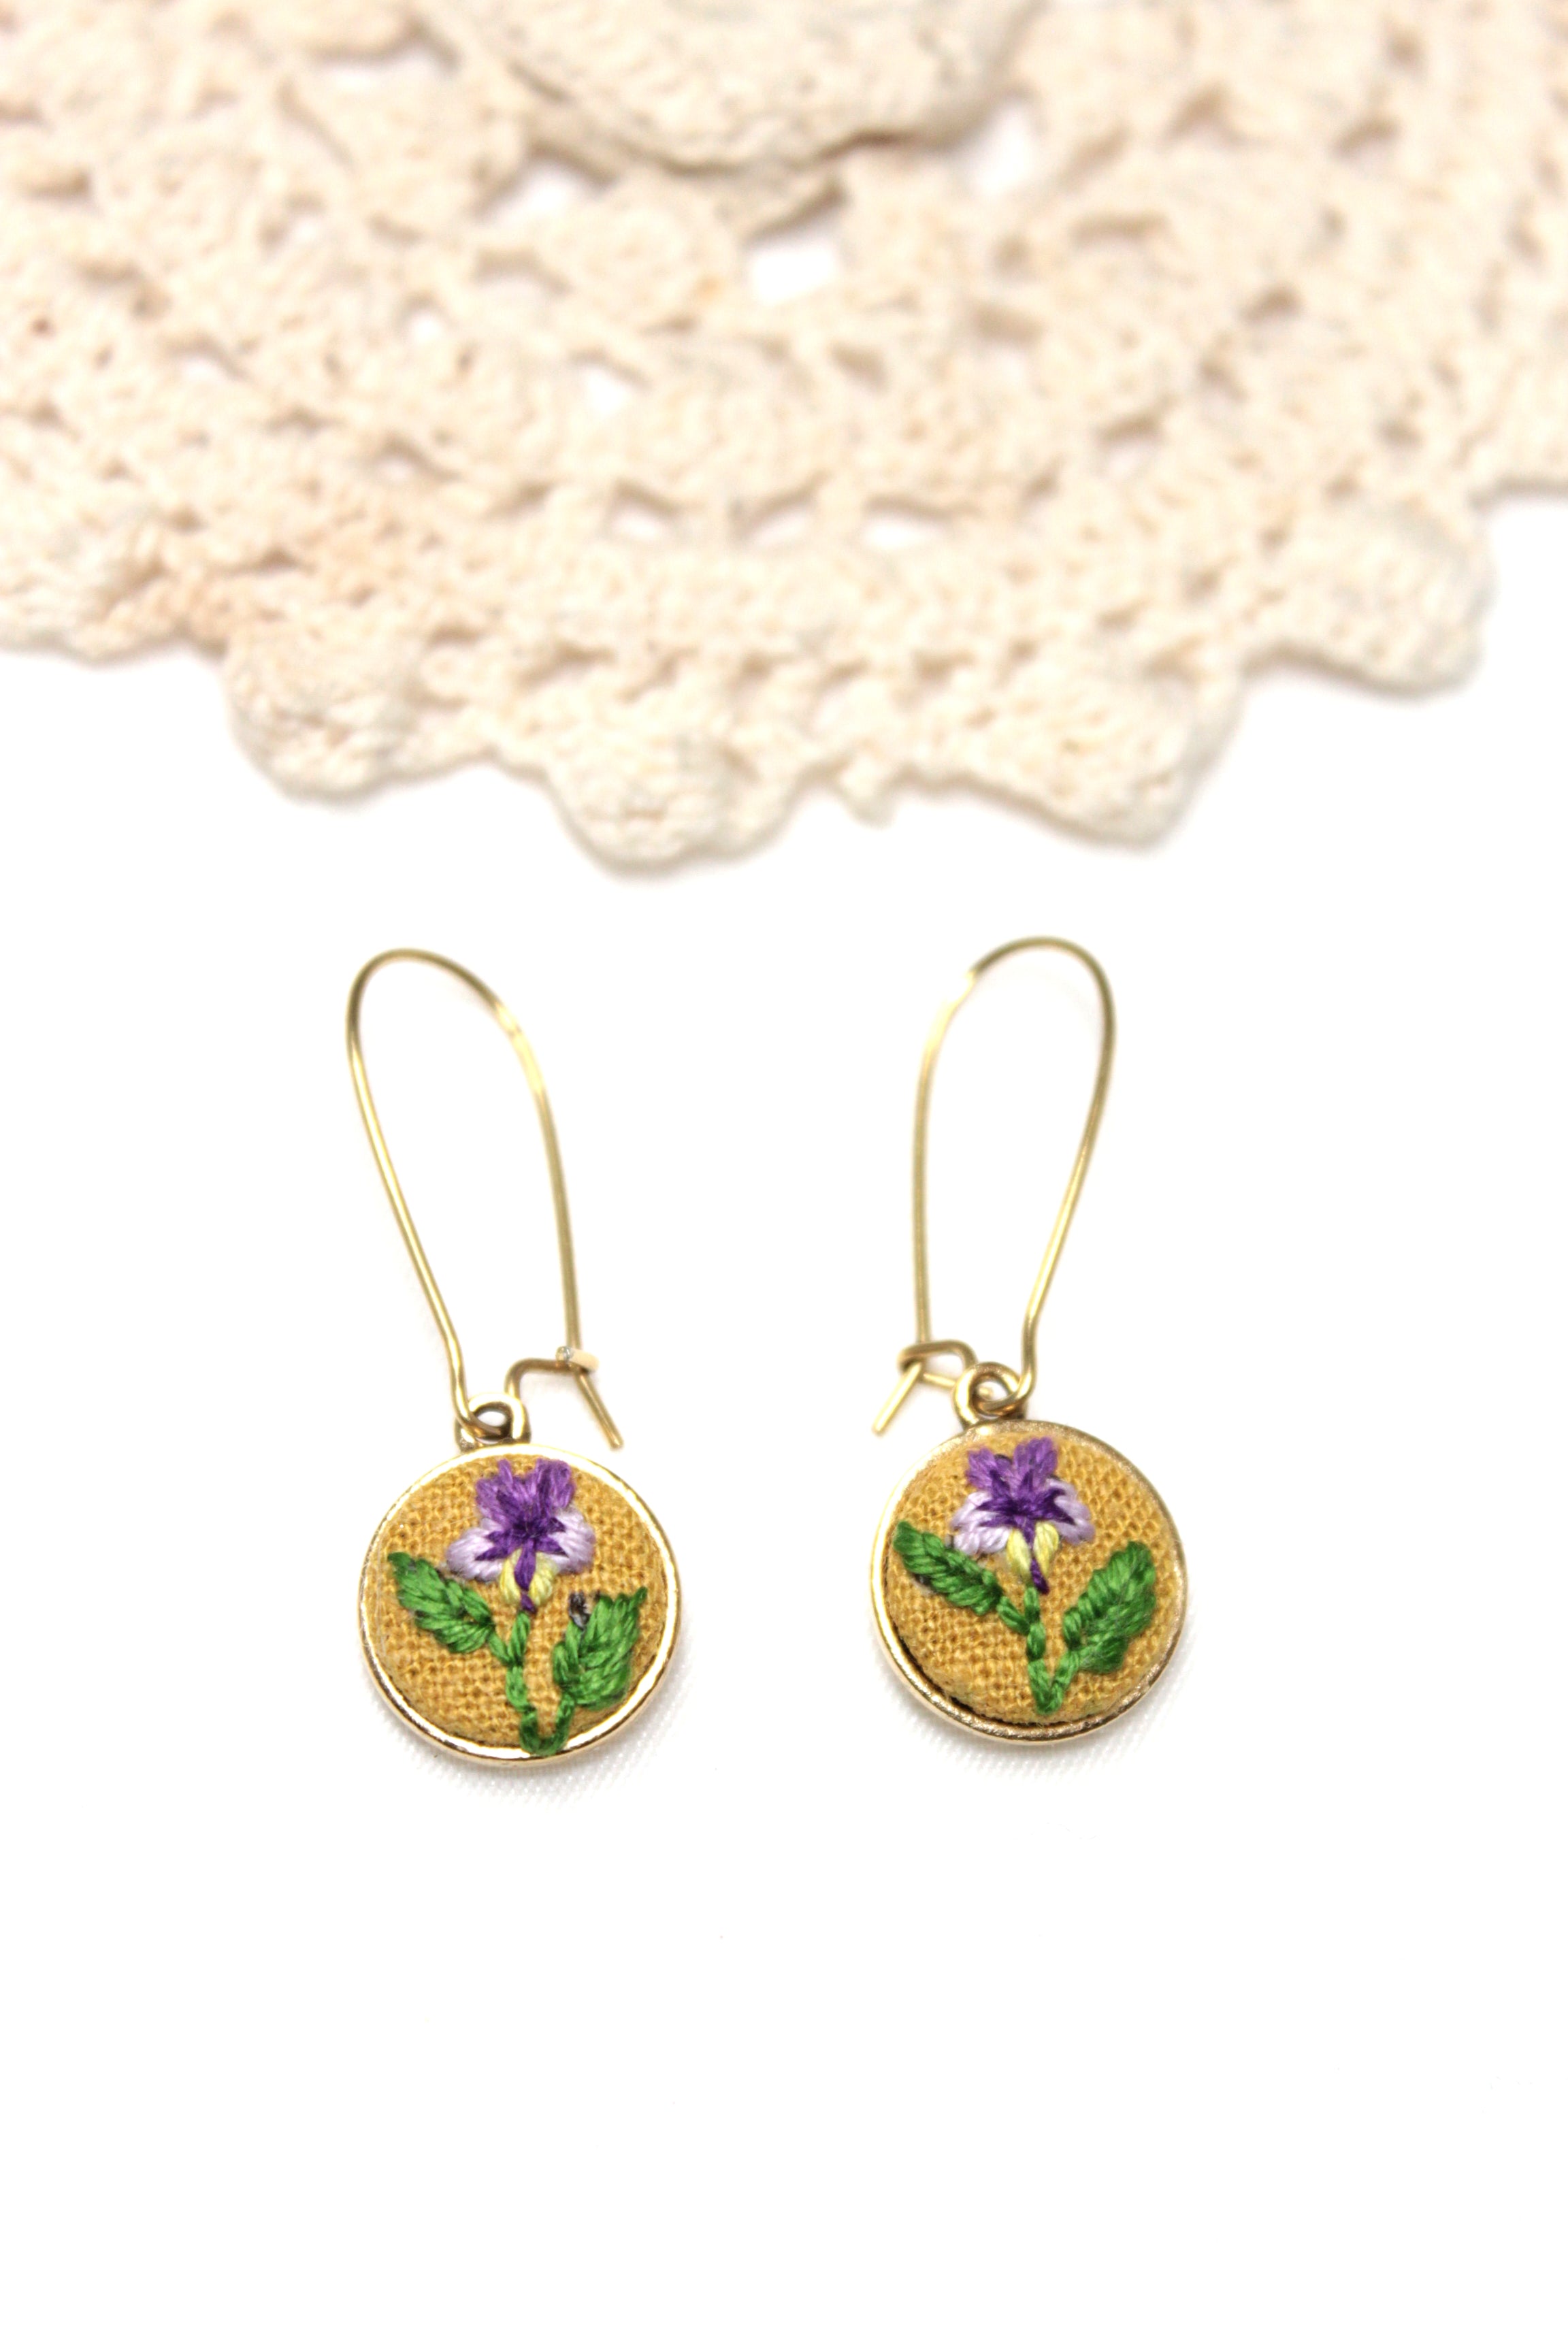 My Pretty Babi Embroidery Purple Flower Kidney Gold Earrings